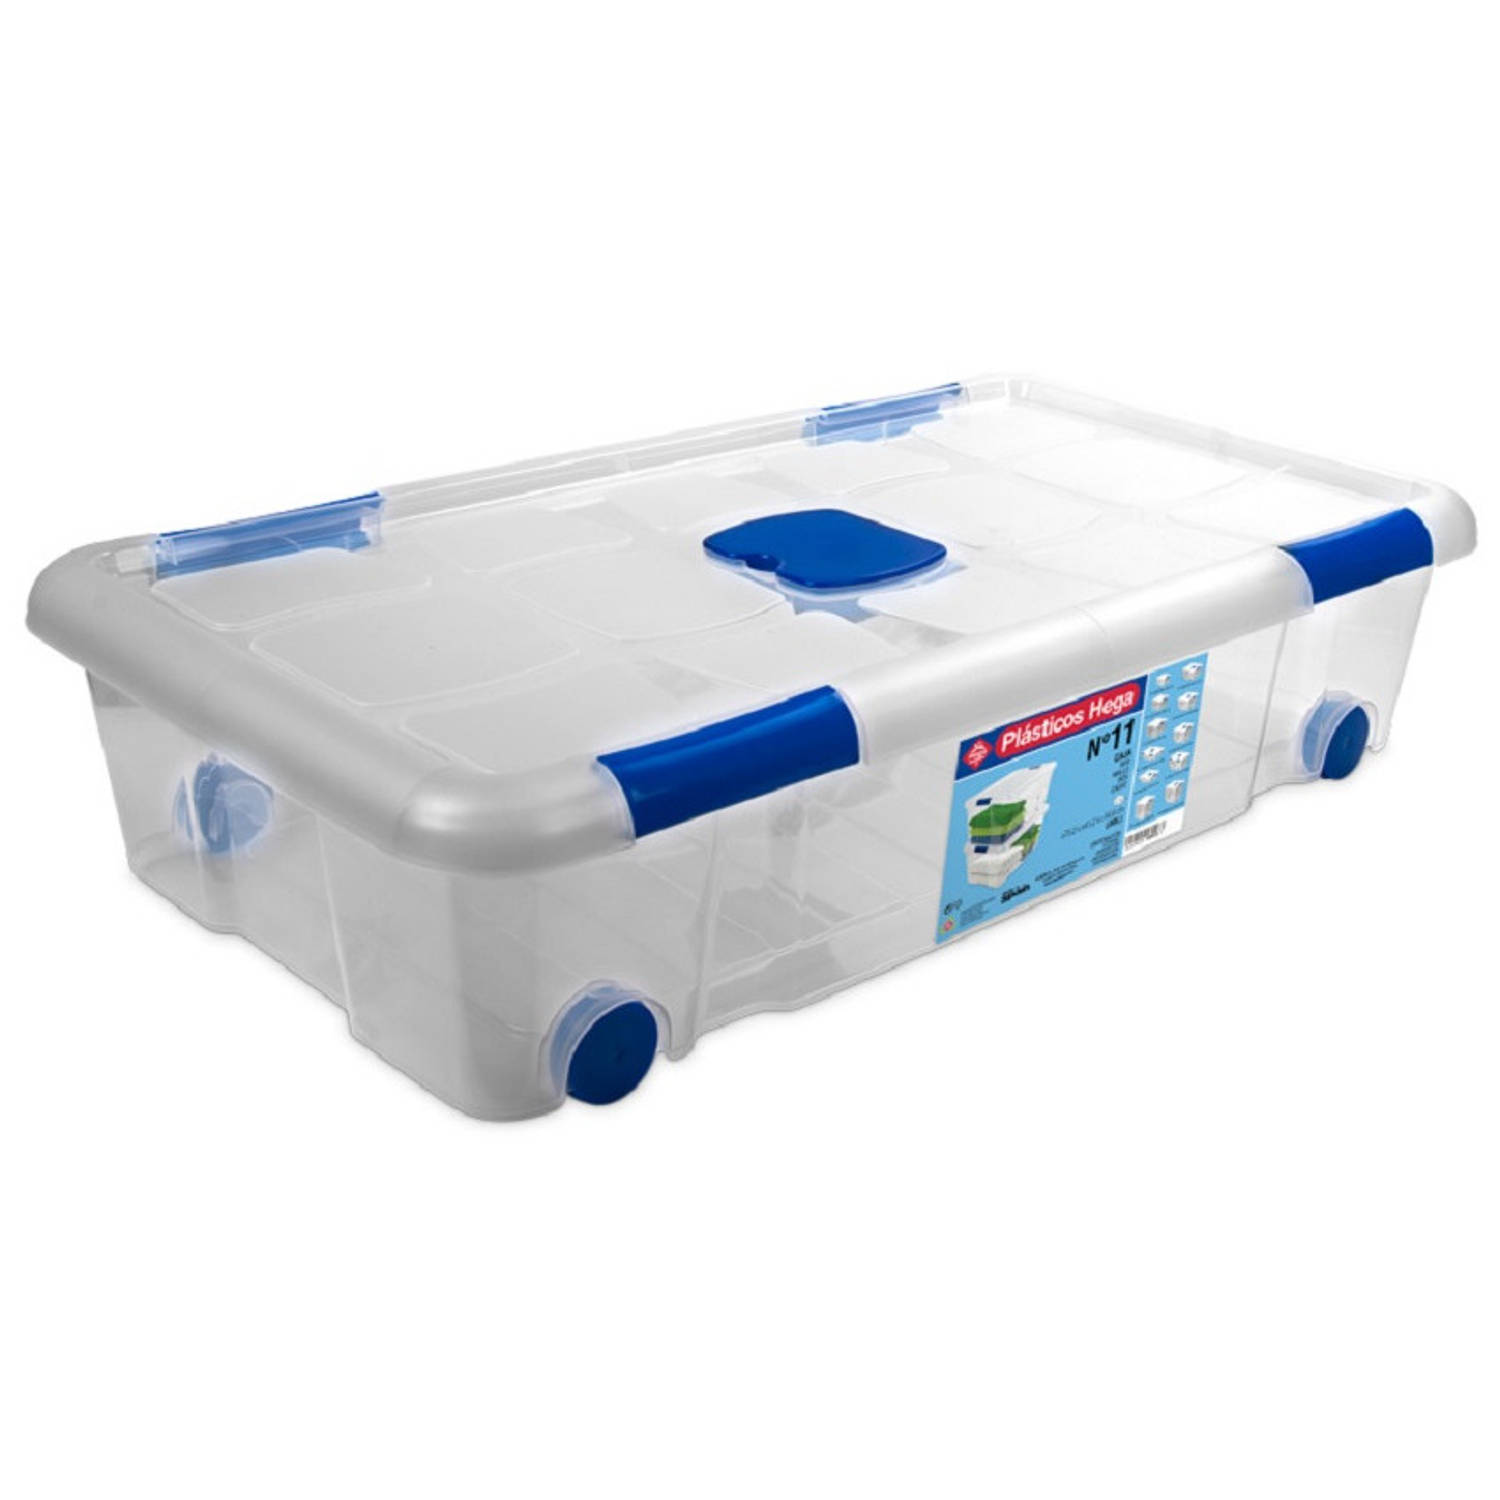 uitspraak inrichting hebzuchtig 1x Opbergboxen/opbergdozen met deksel en wieltjes 30 liter kunststof  transparant/blauw - Opbergbox | Blokker